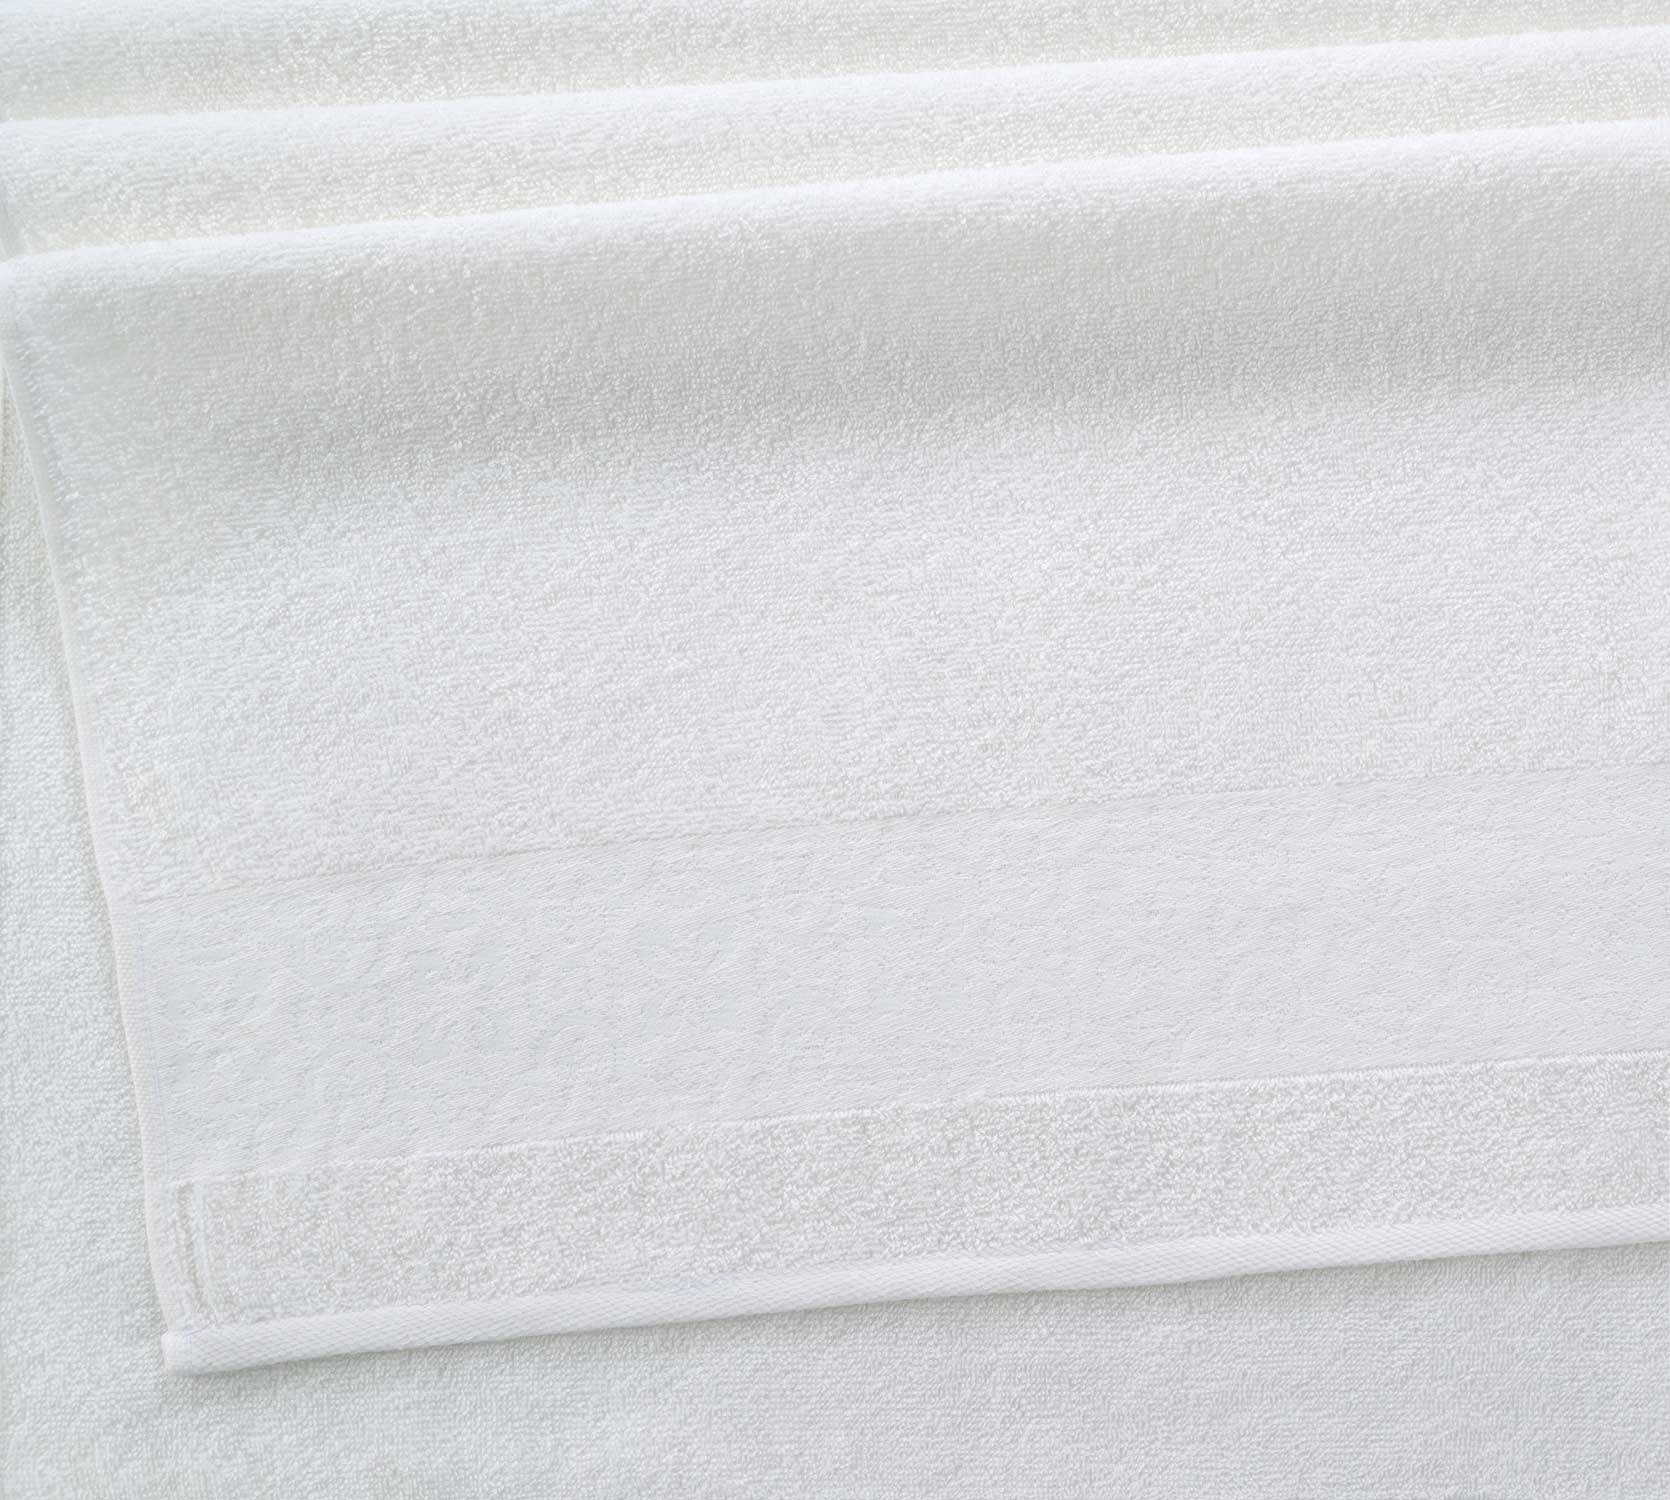 Постельное белье Полотенце махровое для рук и лица 30x60, Мозаика крем фото